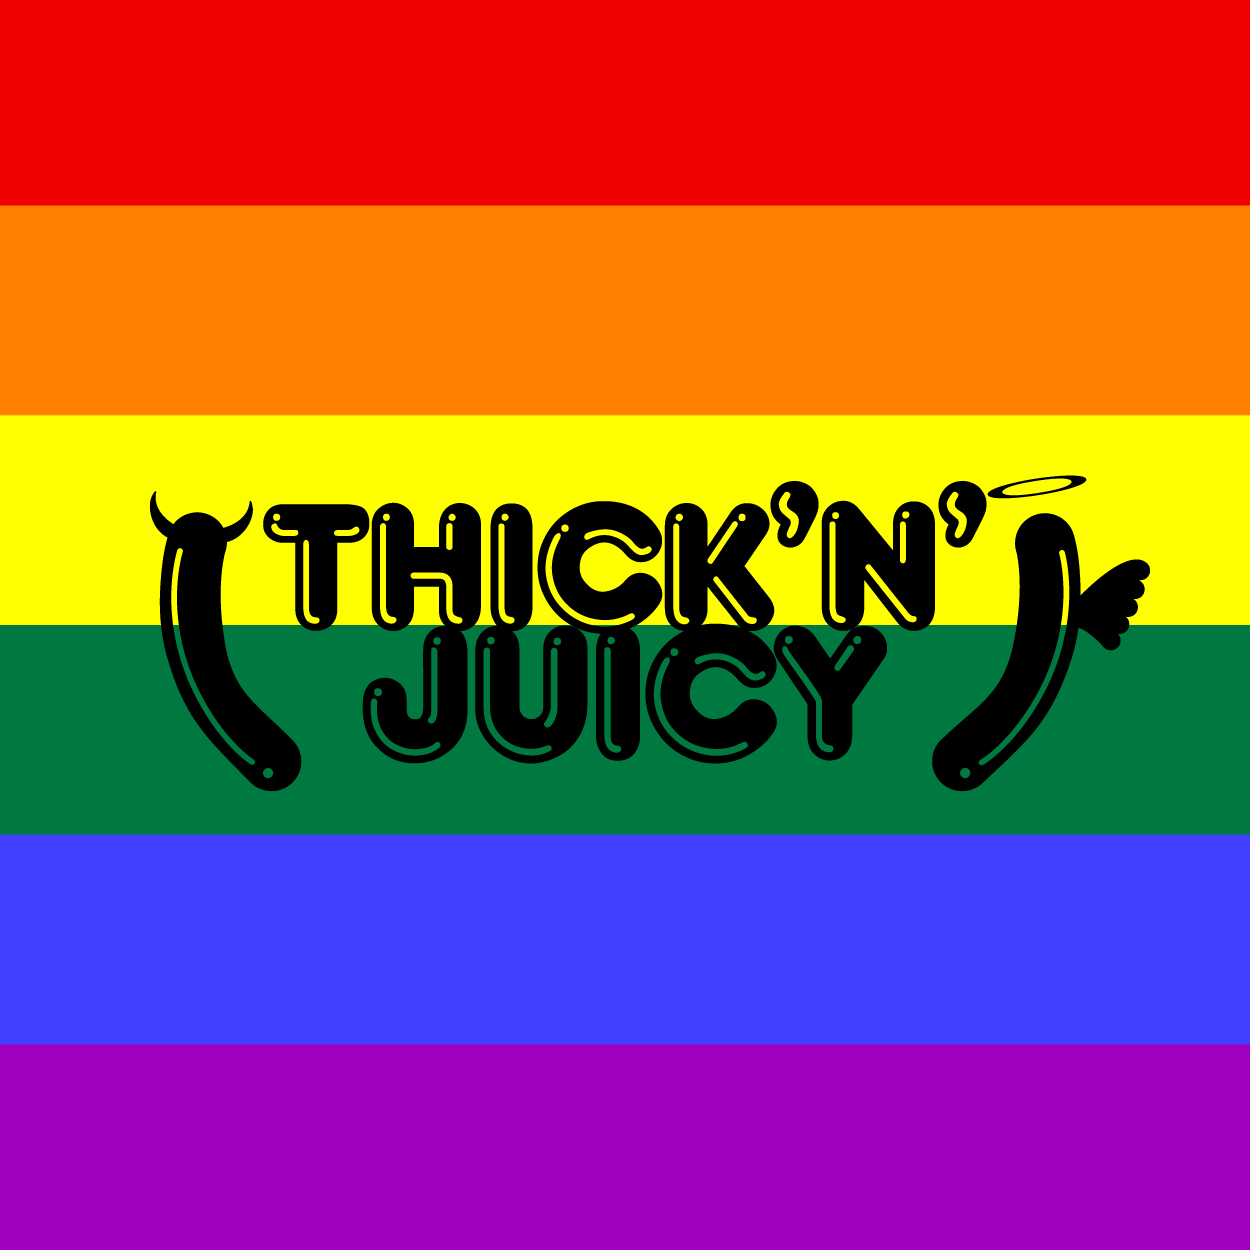 Thick n juicy